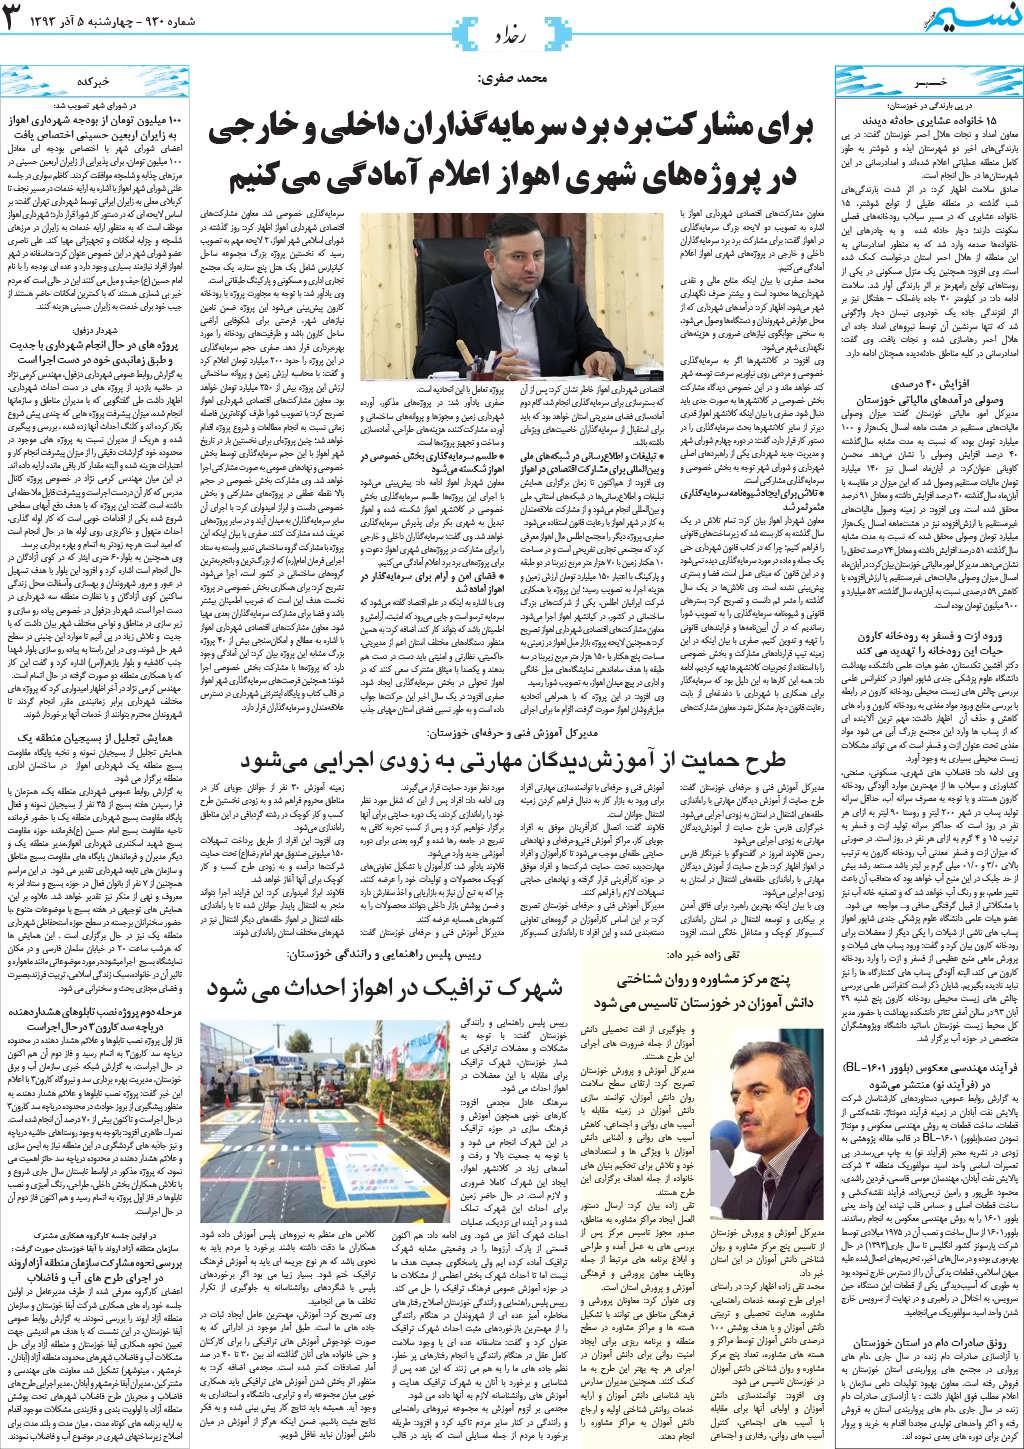 صفحه رخداد روزنامه نسیم شماره 930